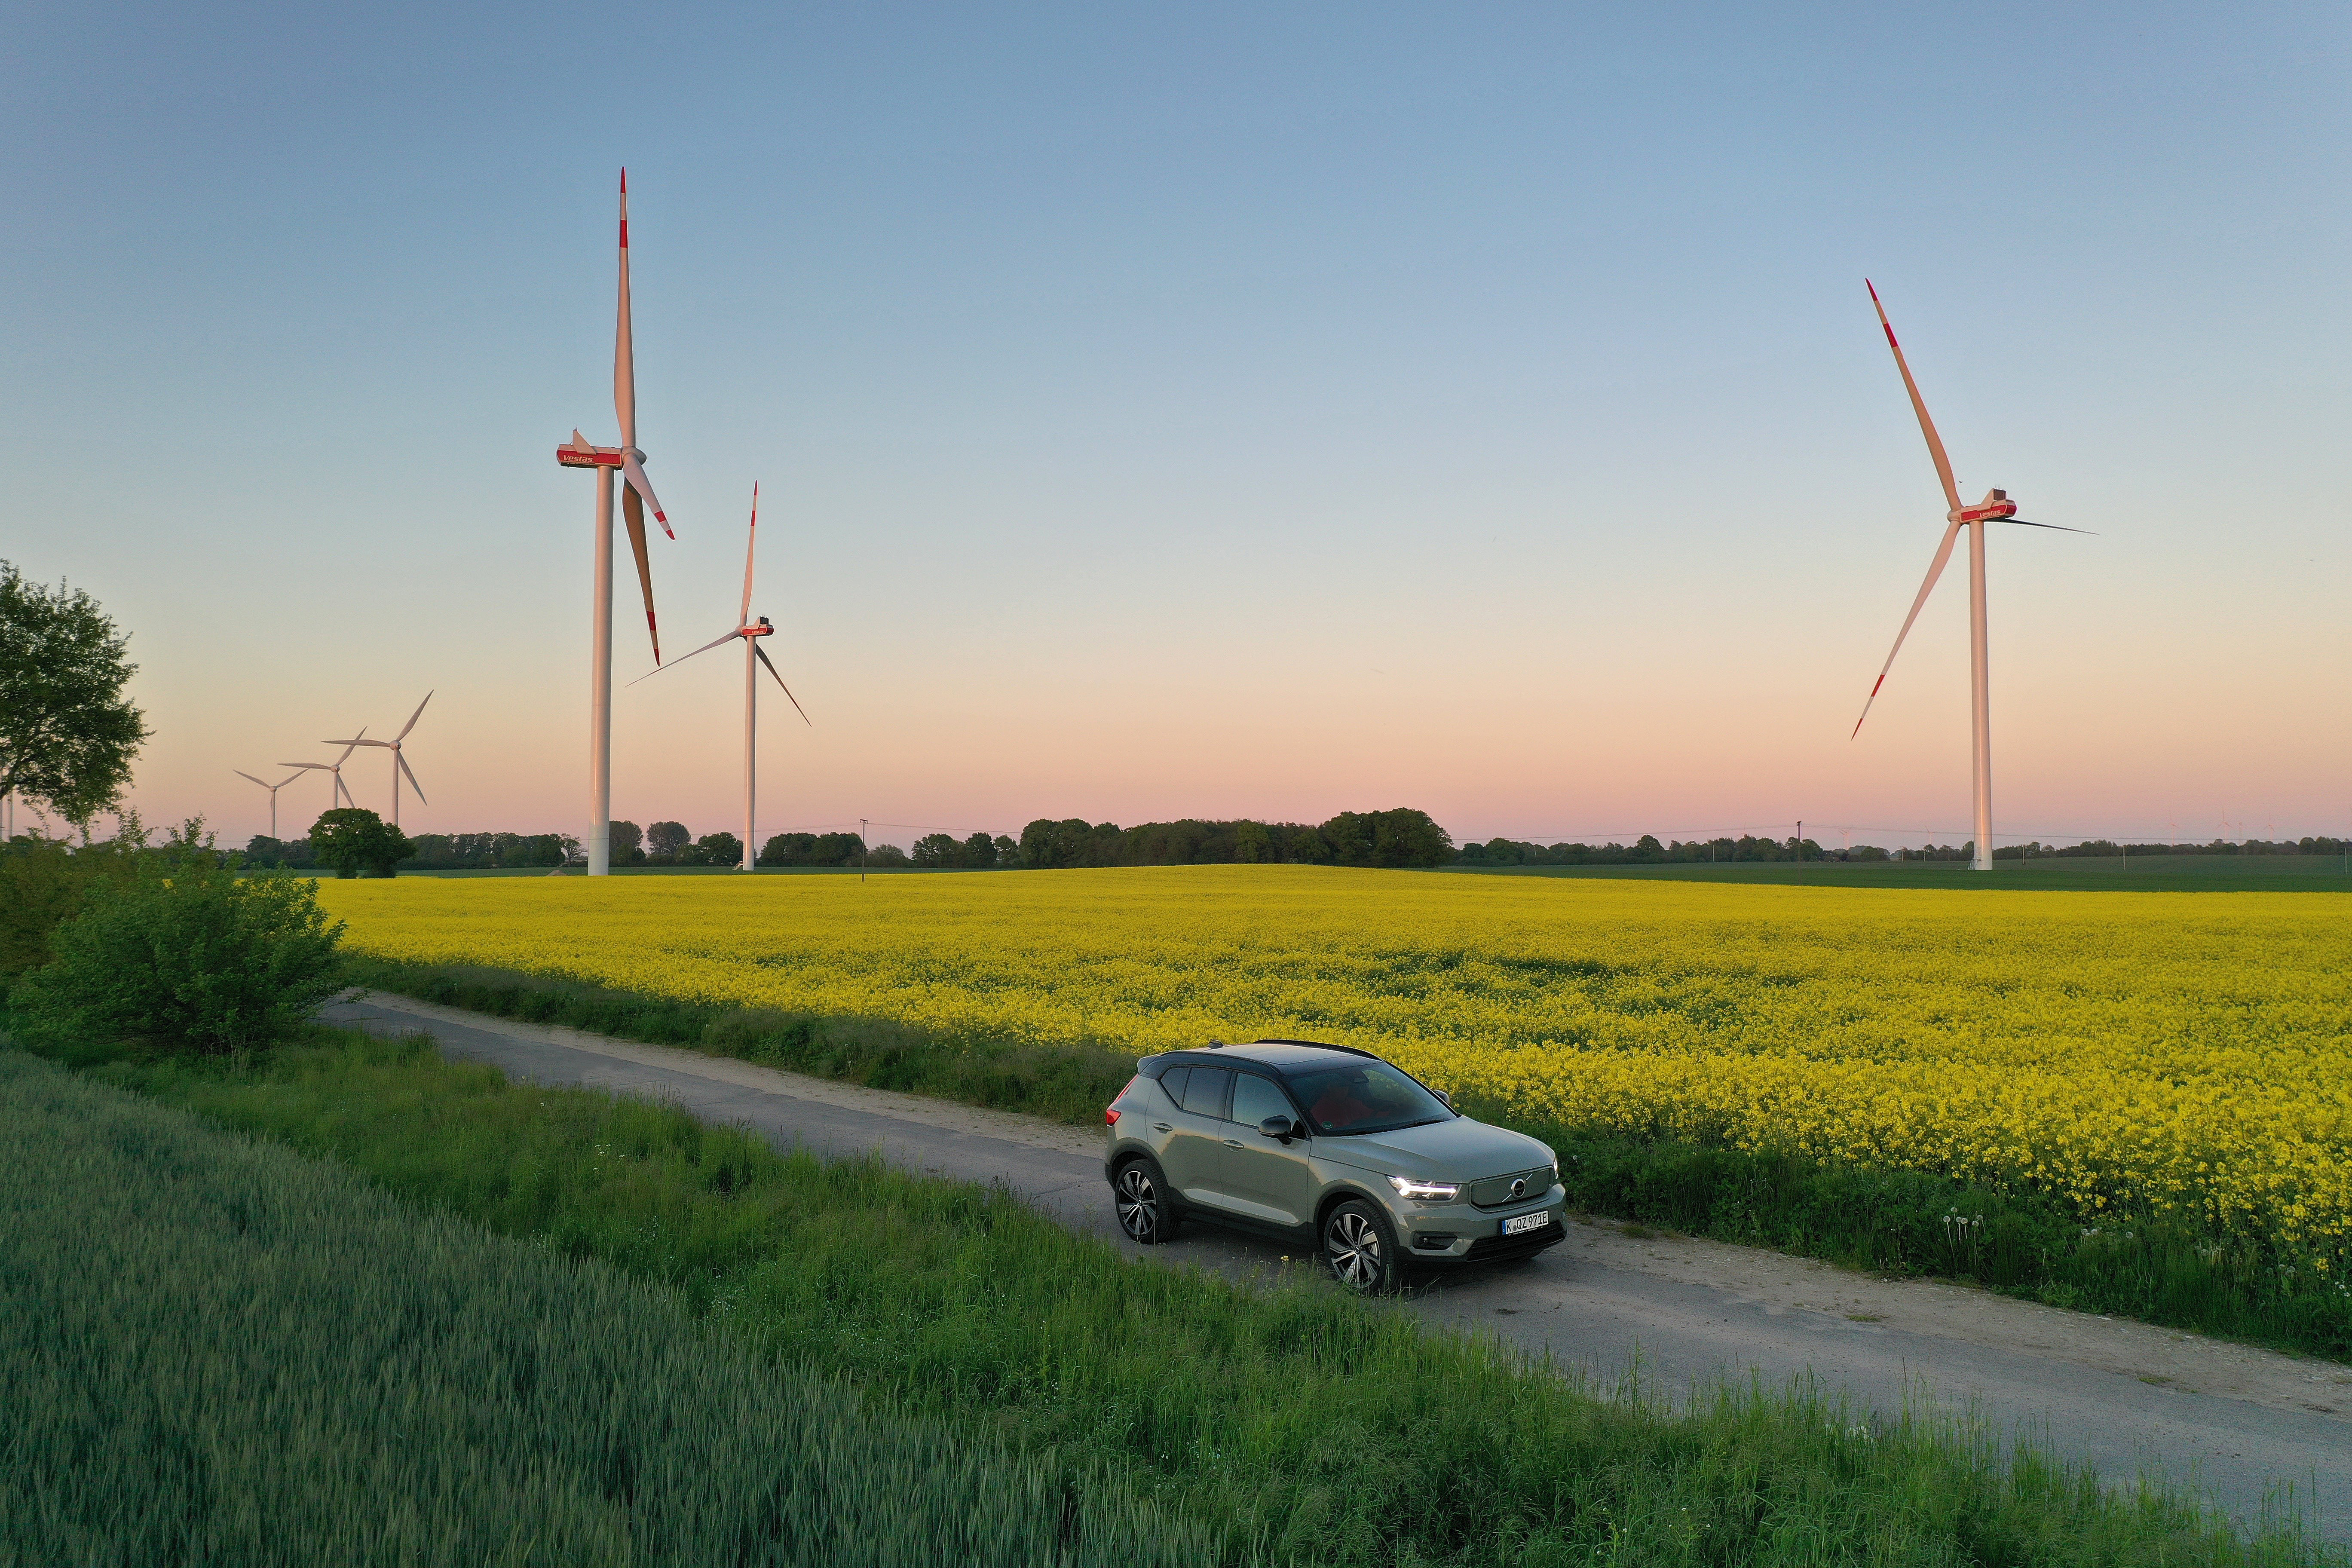 elektrische auto rijdt op een landweg met velden en windmolens erachter